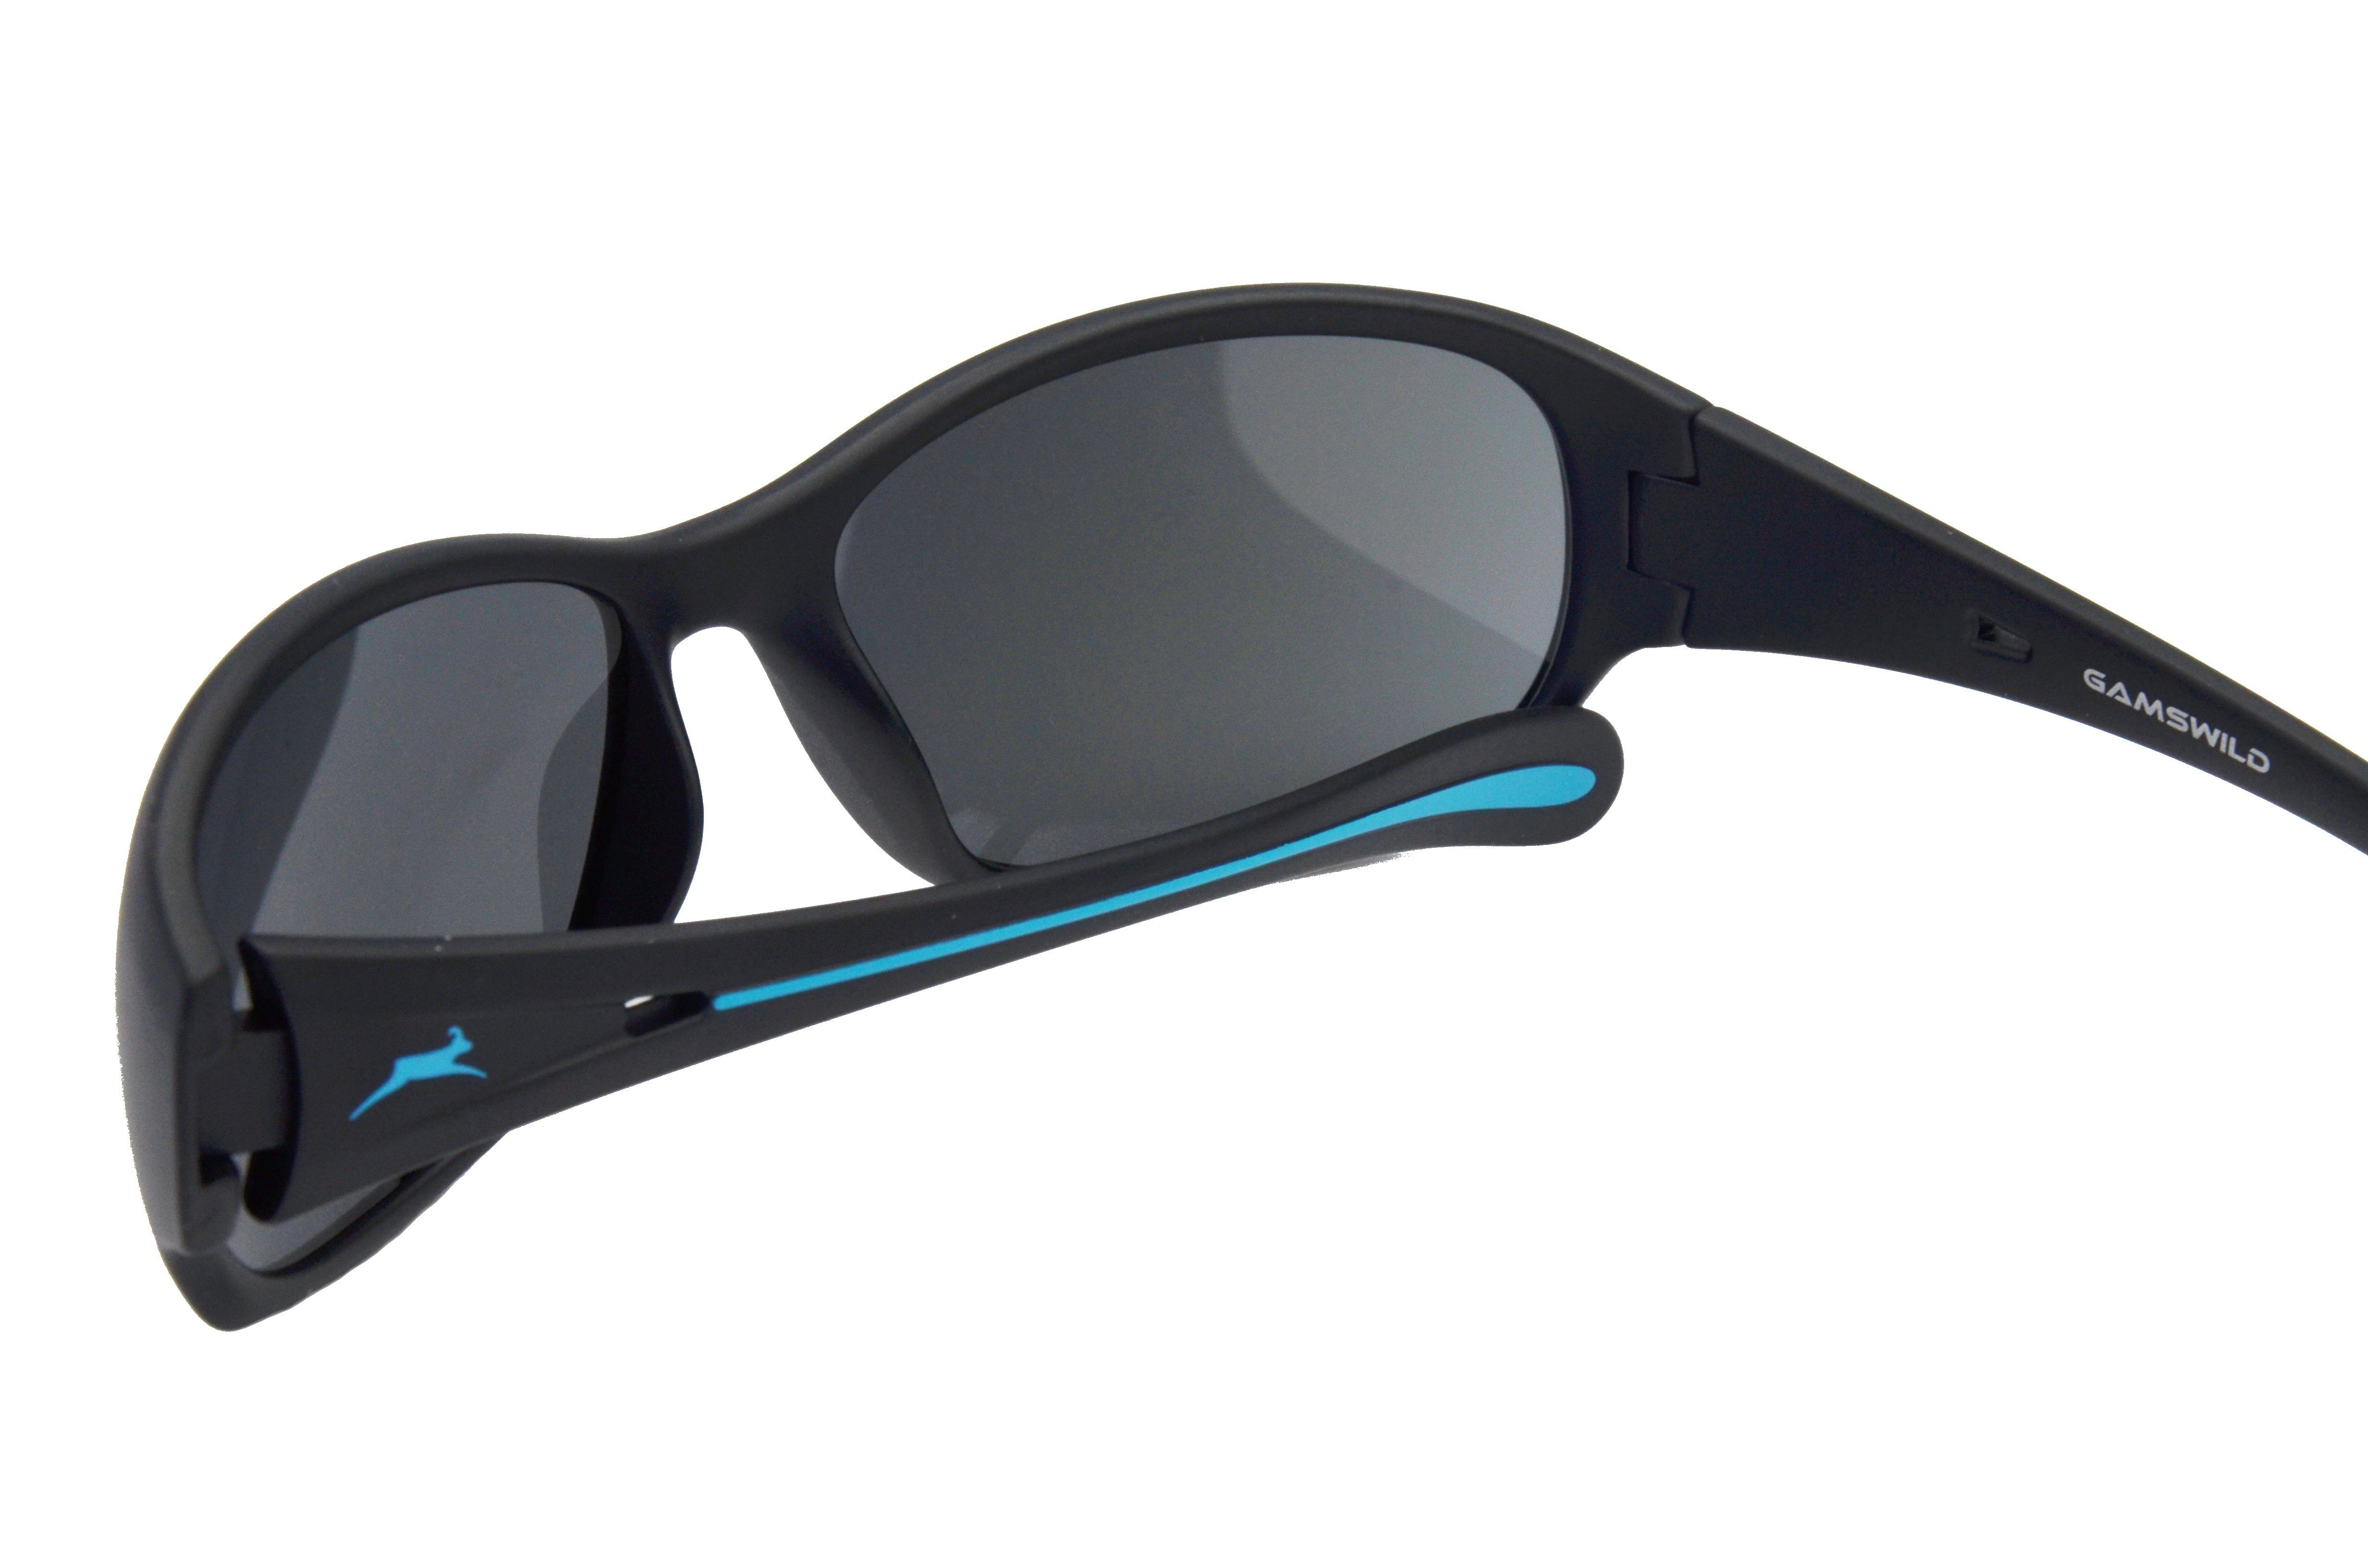 Gamswild Sonnenbrille WS2424 Damenmodell schmal Damenbrille Fahrradbrille, geschnittenes schwarz-pink, braun-grün, Skibrille Sportbrille schwarz-blau